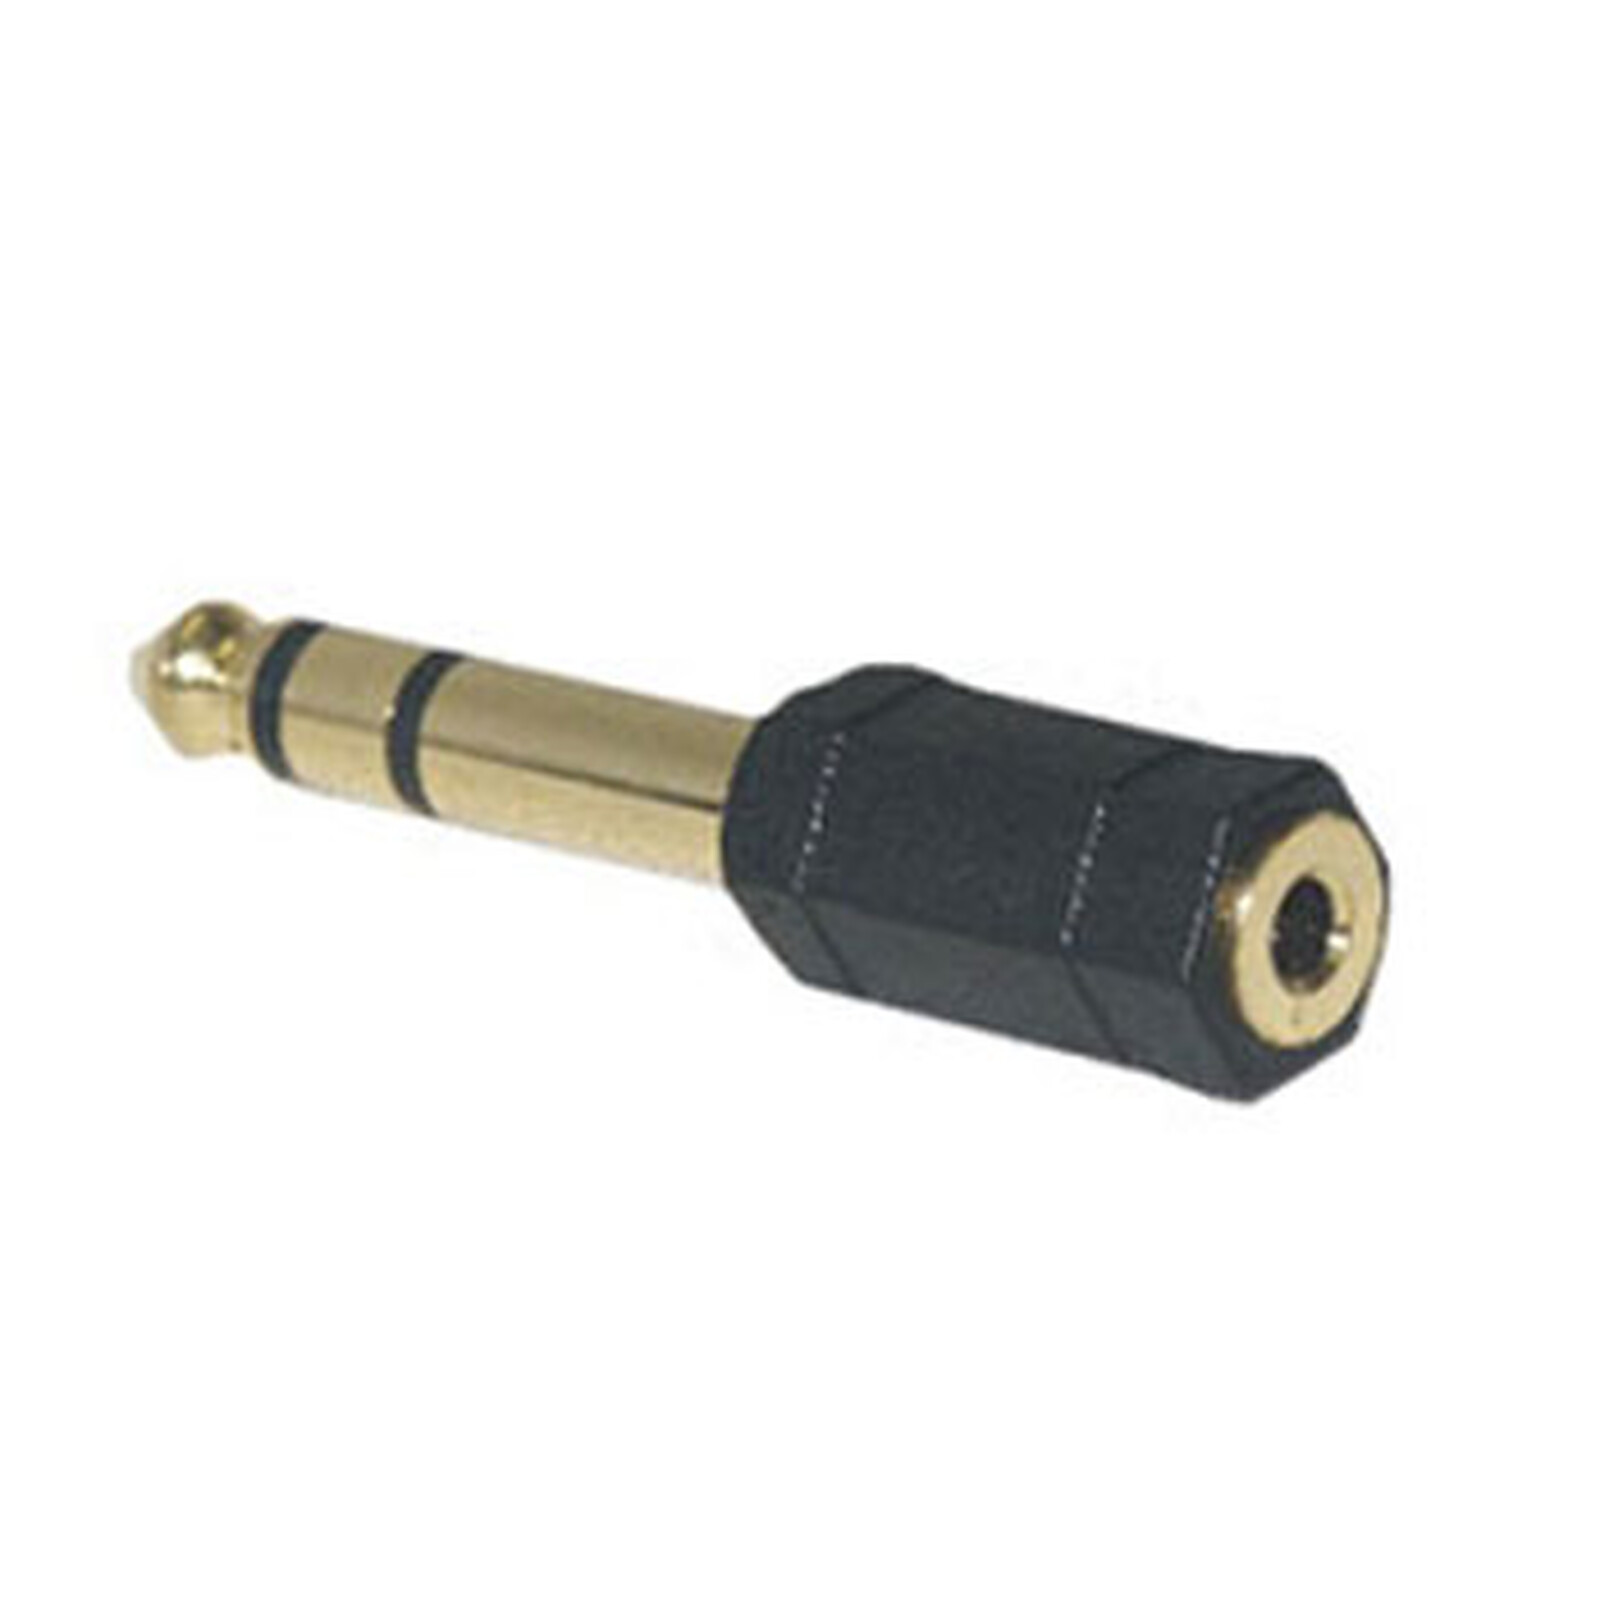 Adaptateur jack 3.5 mm TRS femelle vers USB-C mâle - Longueur 6 cm